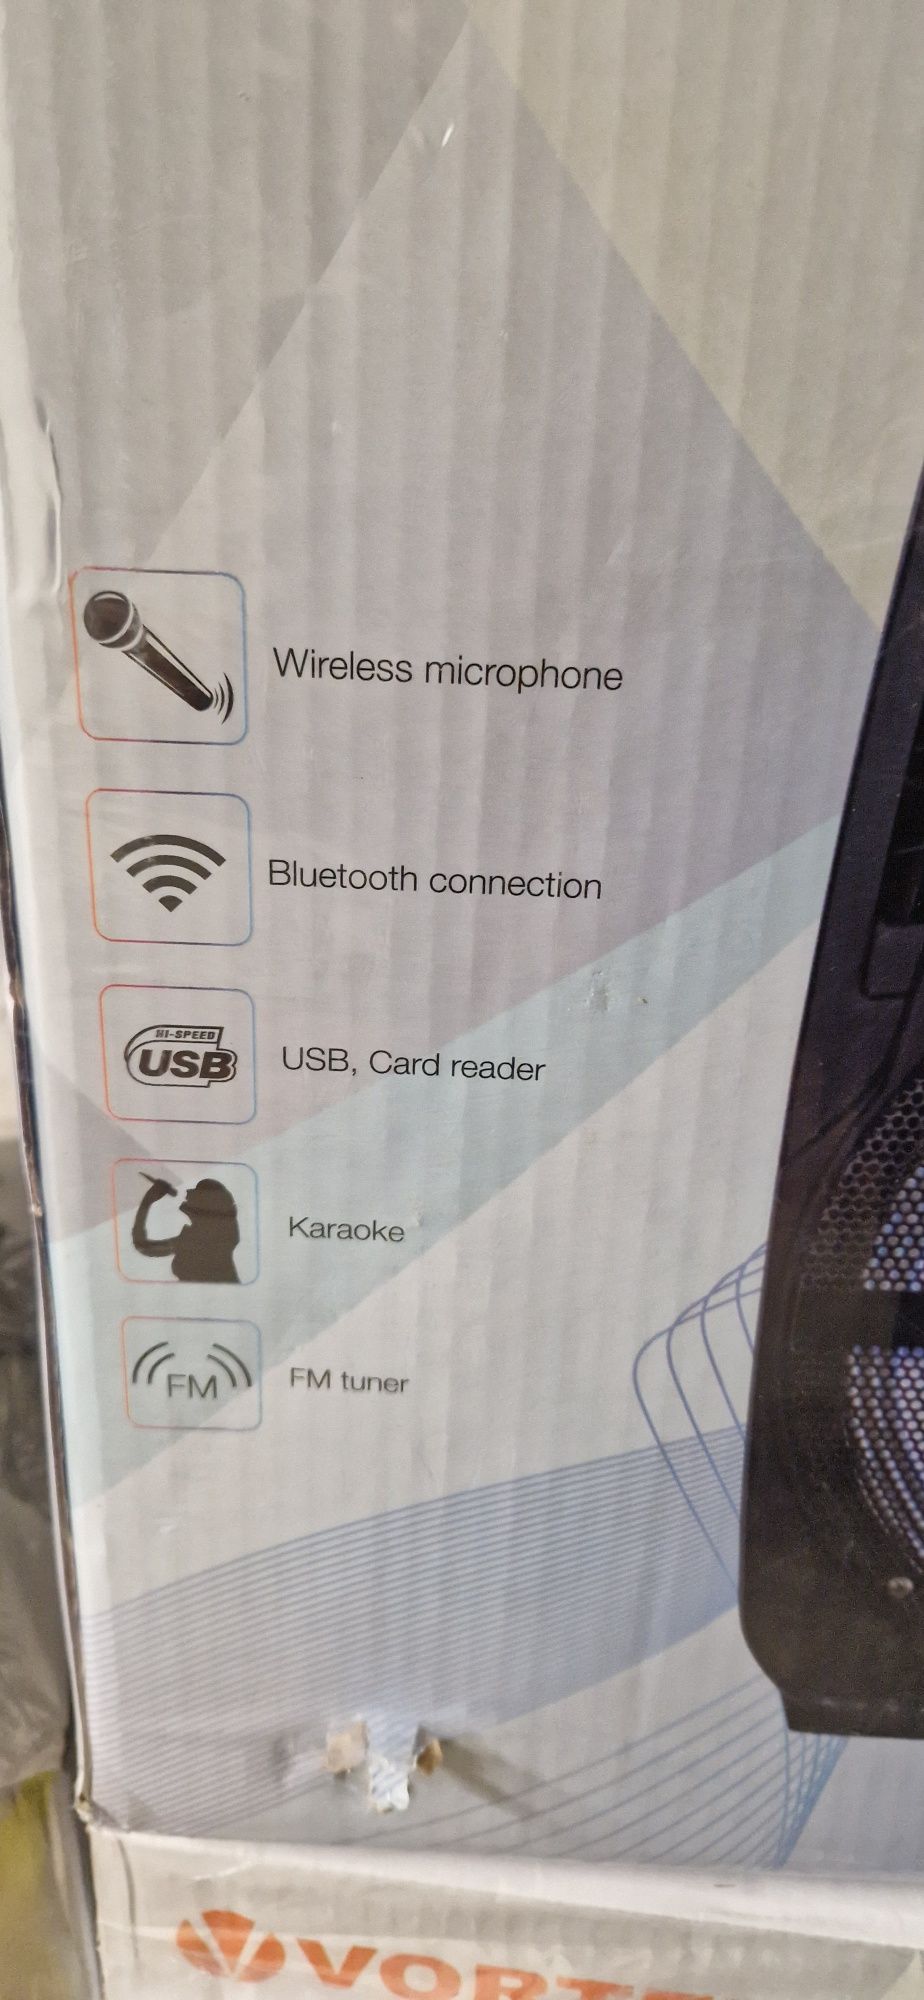 Boxa portabila cu microfon wireless, VO2604, bluetooth, USB,